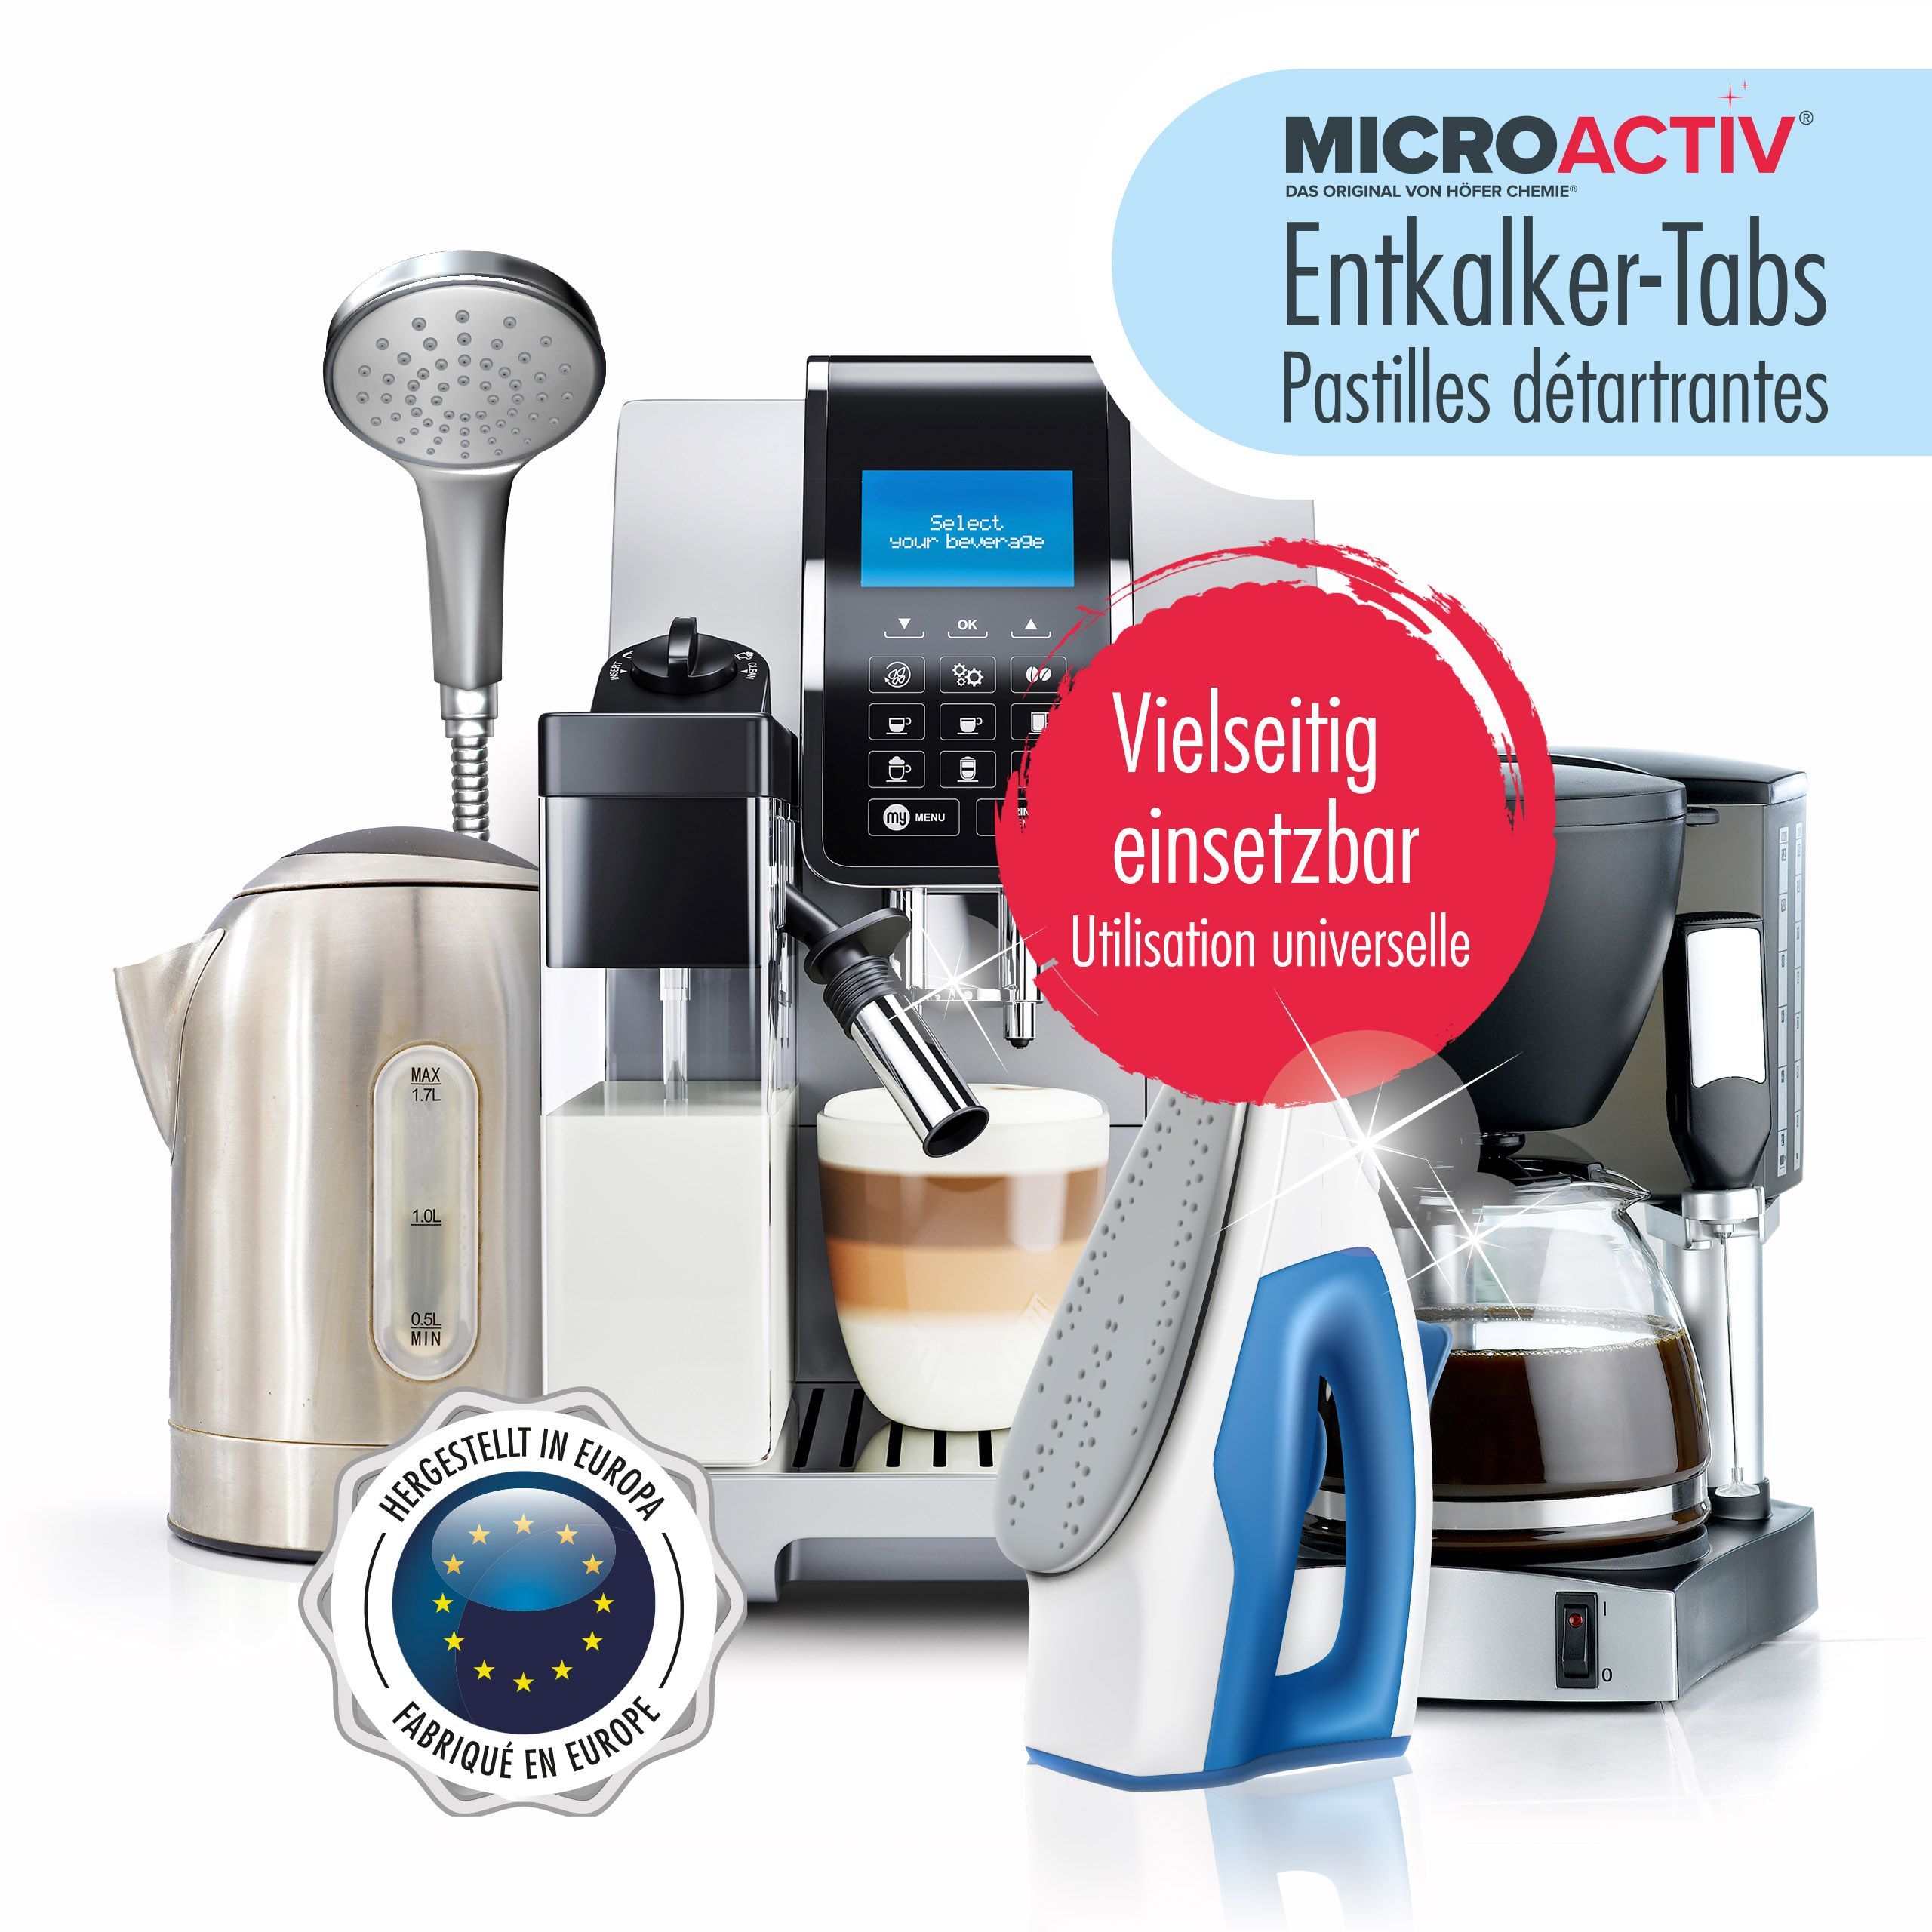 300 g de pastilles détartrantes Microactiv® pour machines à café et appareils ménagers